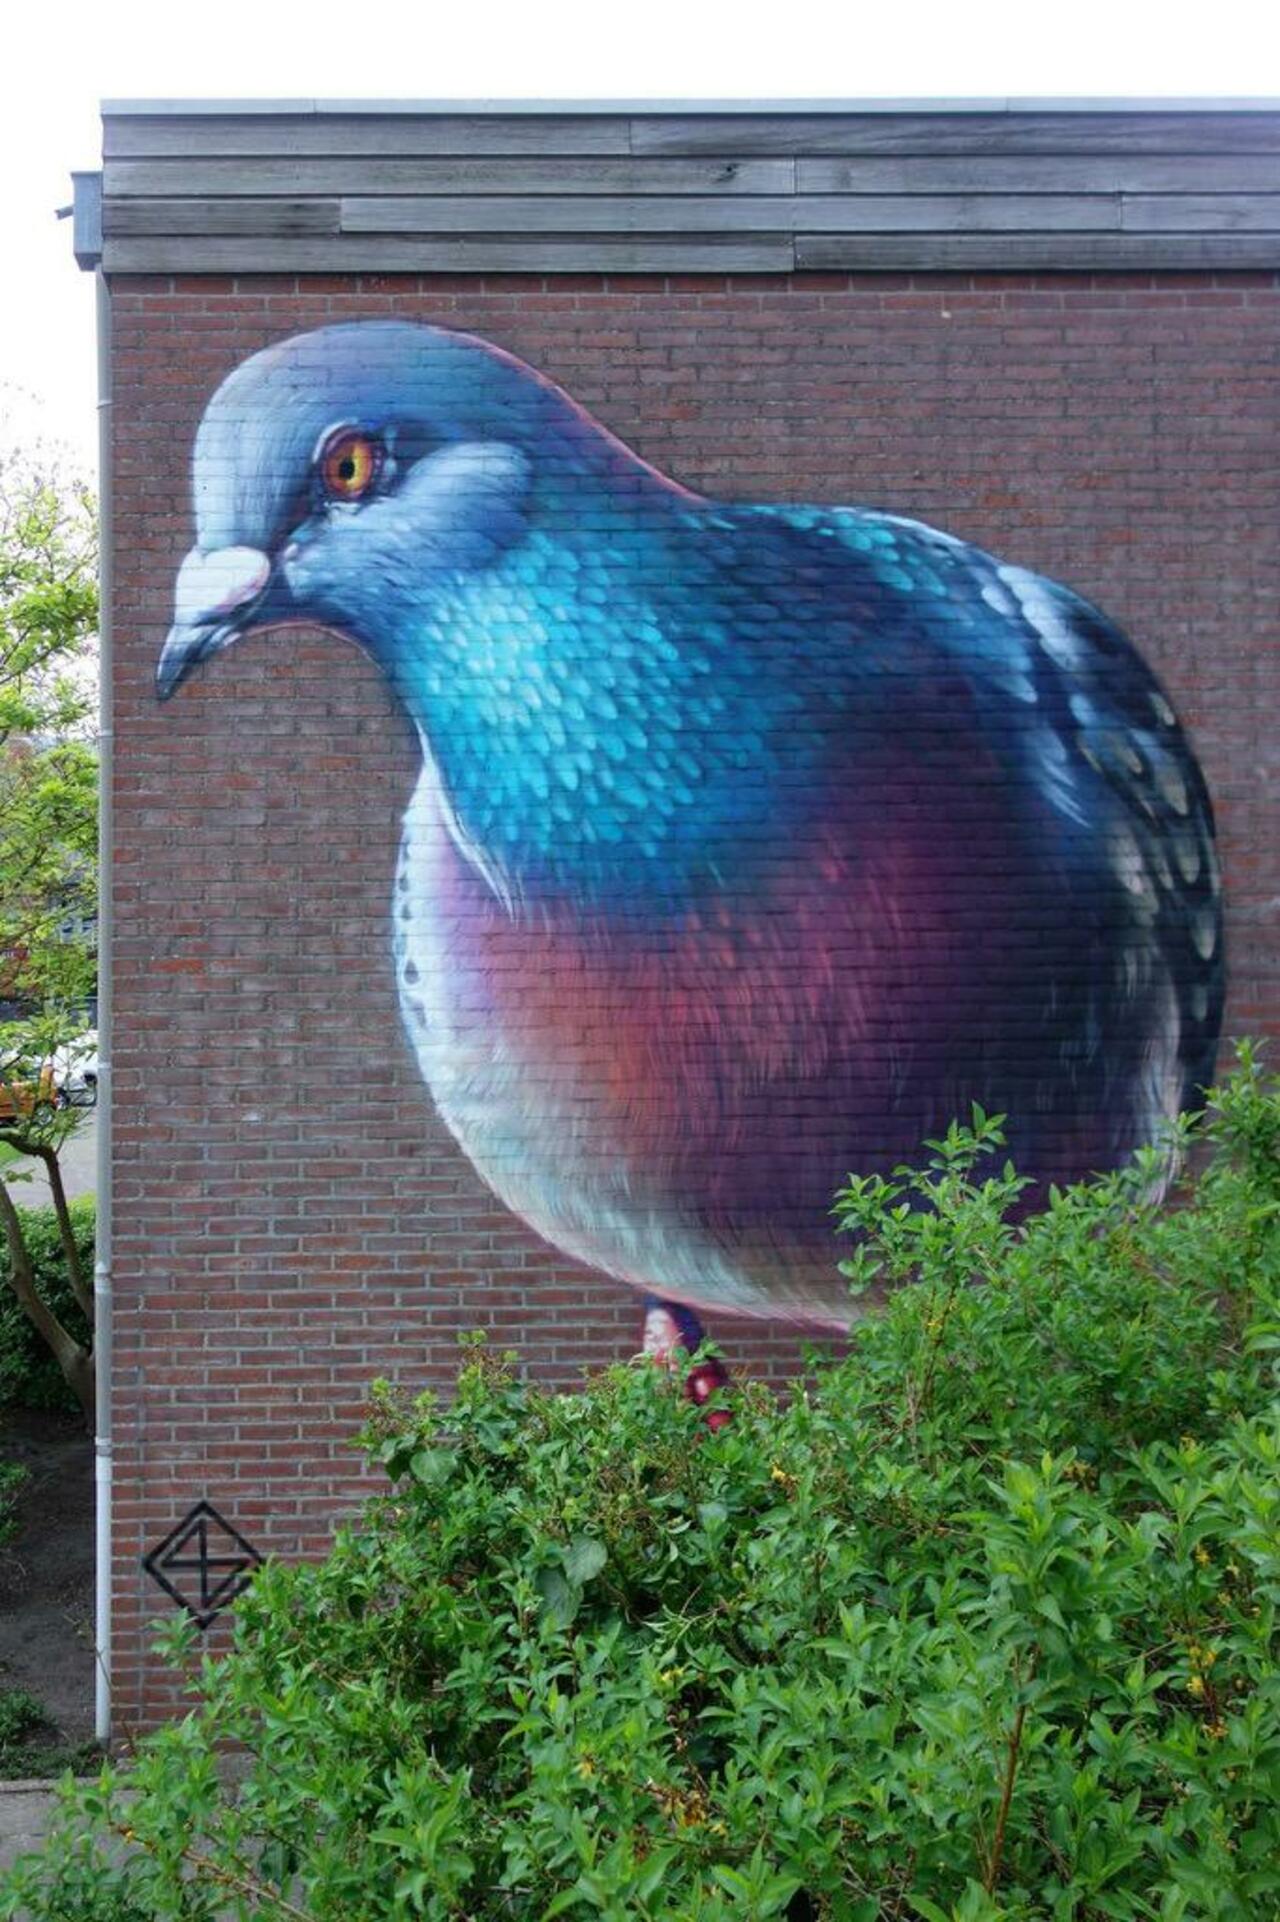 Cool! Street Art by Super A 

#art #graffiti #mural #streetart http://t.co/5NuiQJH2ey MT @GoogleStreetArt